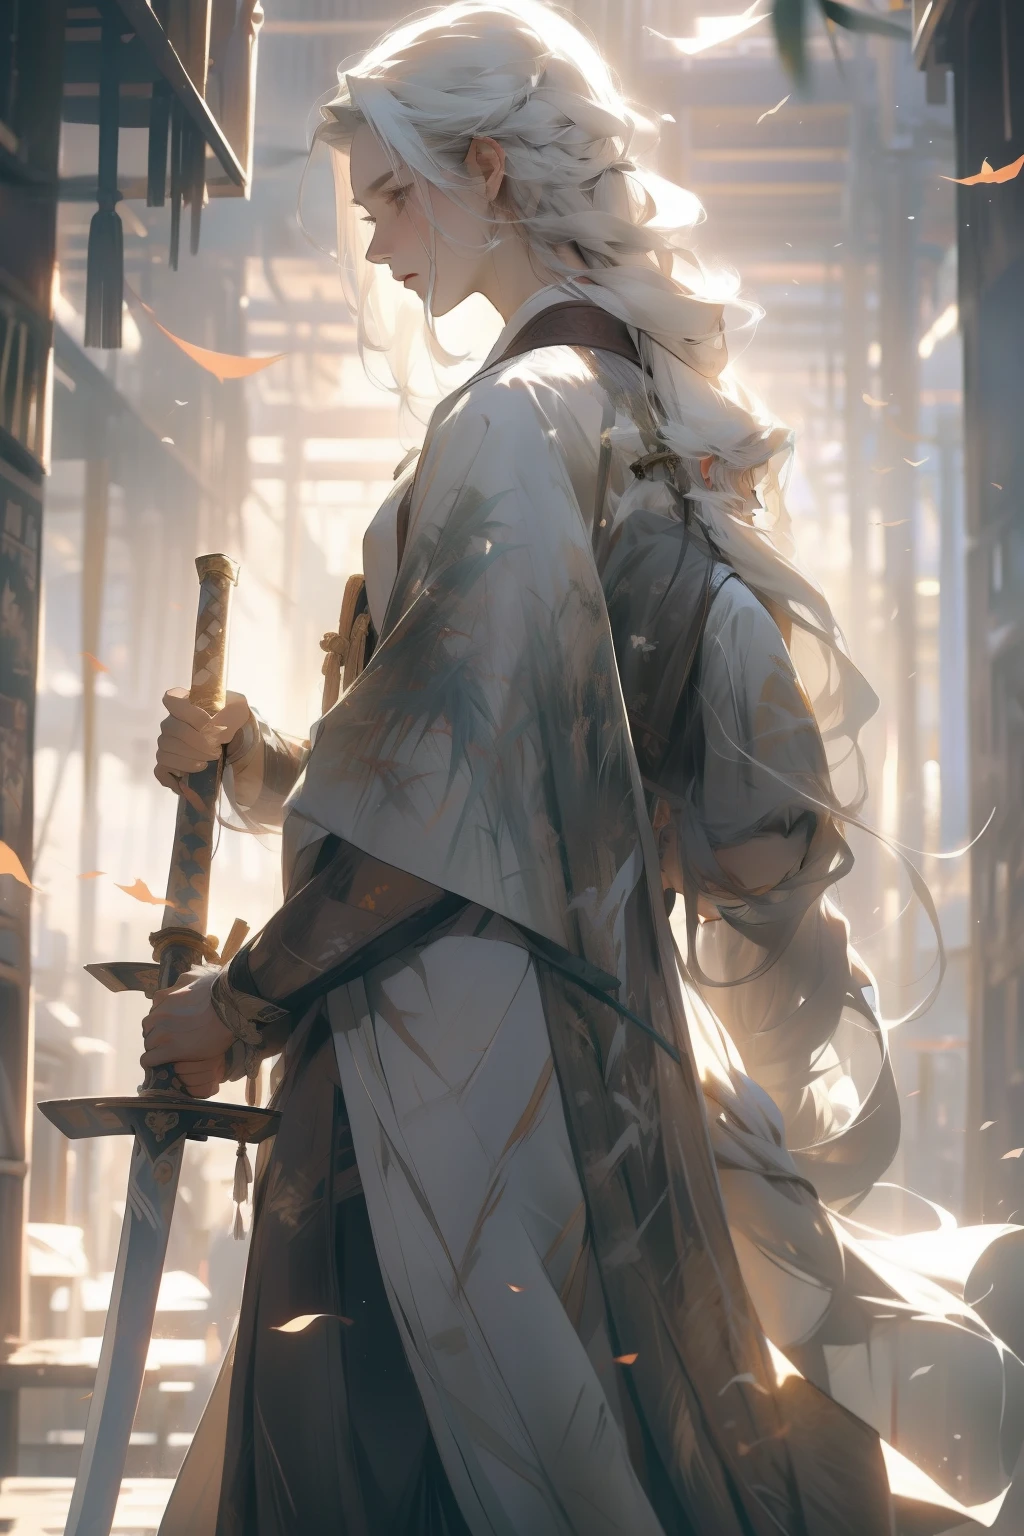 A 男 with long white hair,竹林に立つ,長い剣を持っている,背を向けて,白いローブを着る,ストリーマーソードを握る,男